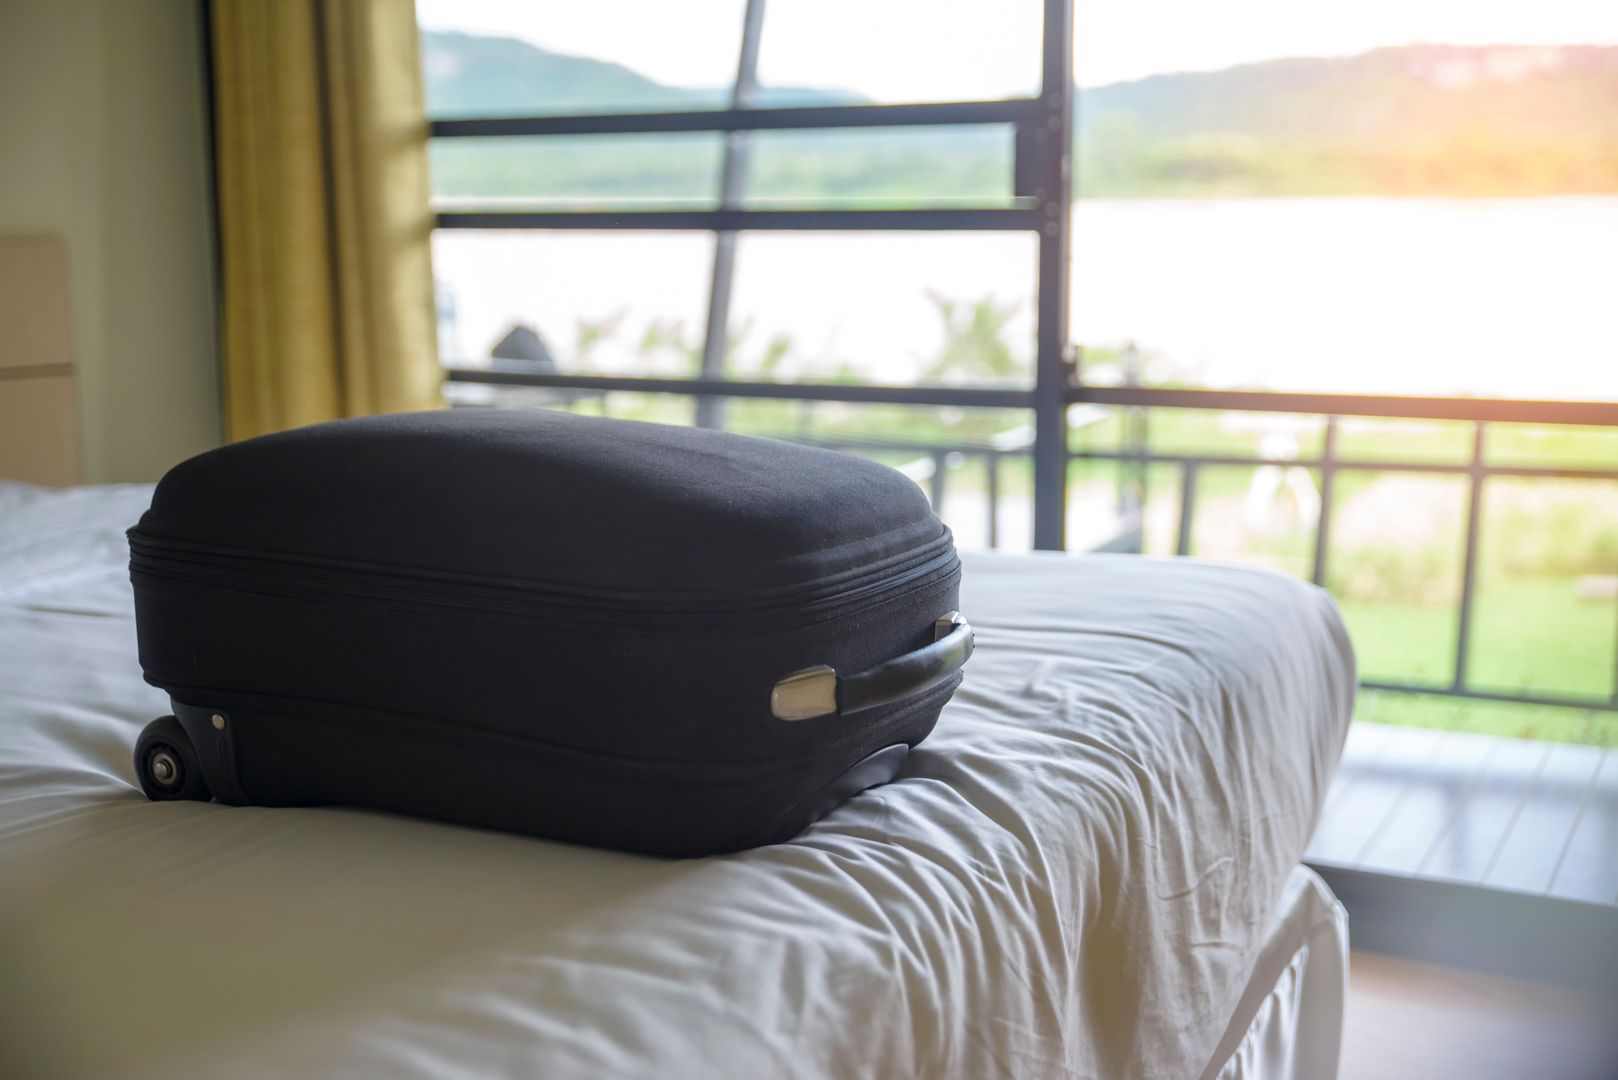 Nigdy nie kładź walizki na hotelowym łóżku. Konsekwencje mogą być dotkliwe